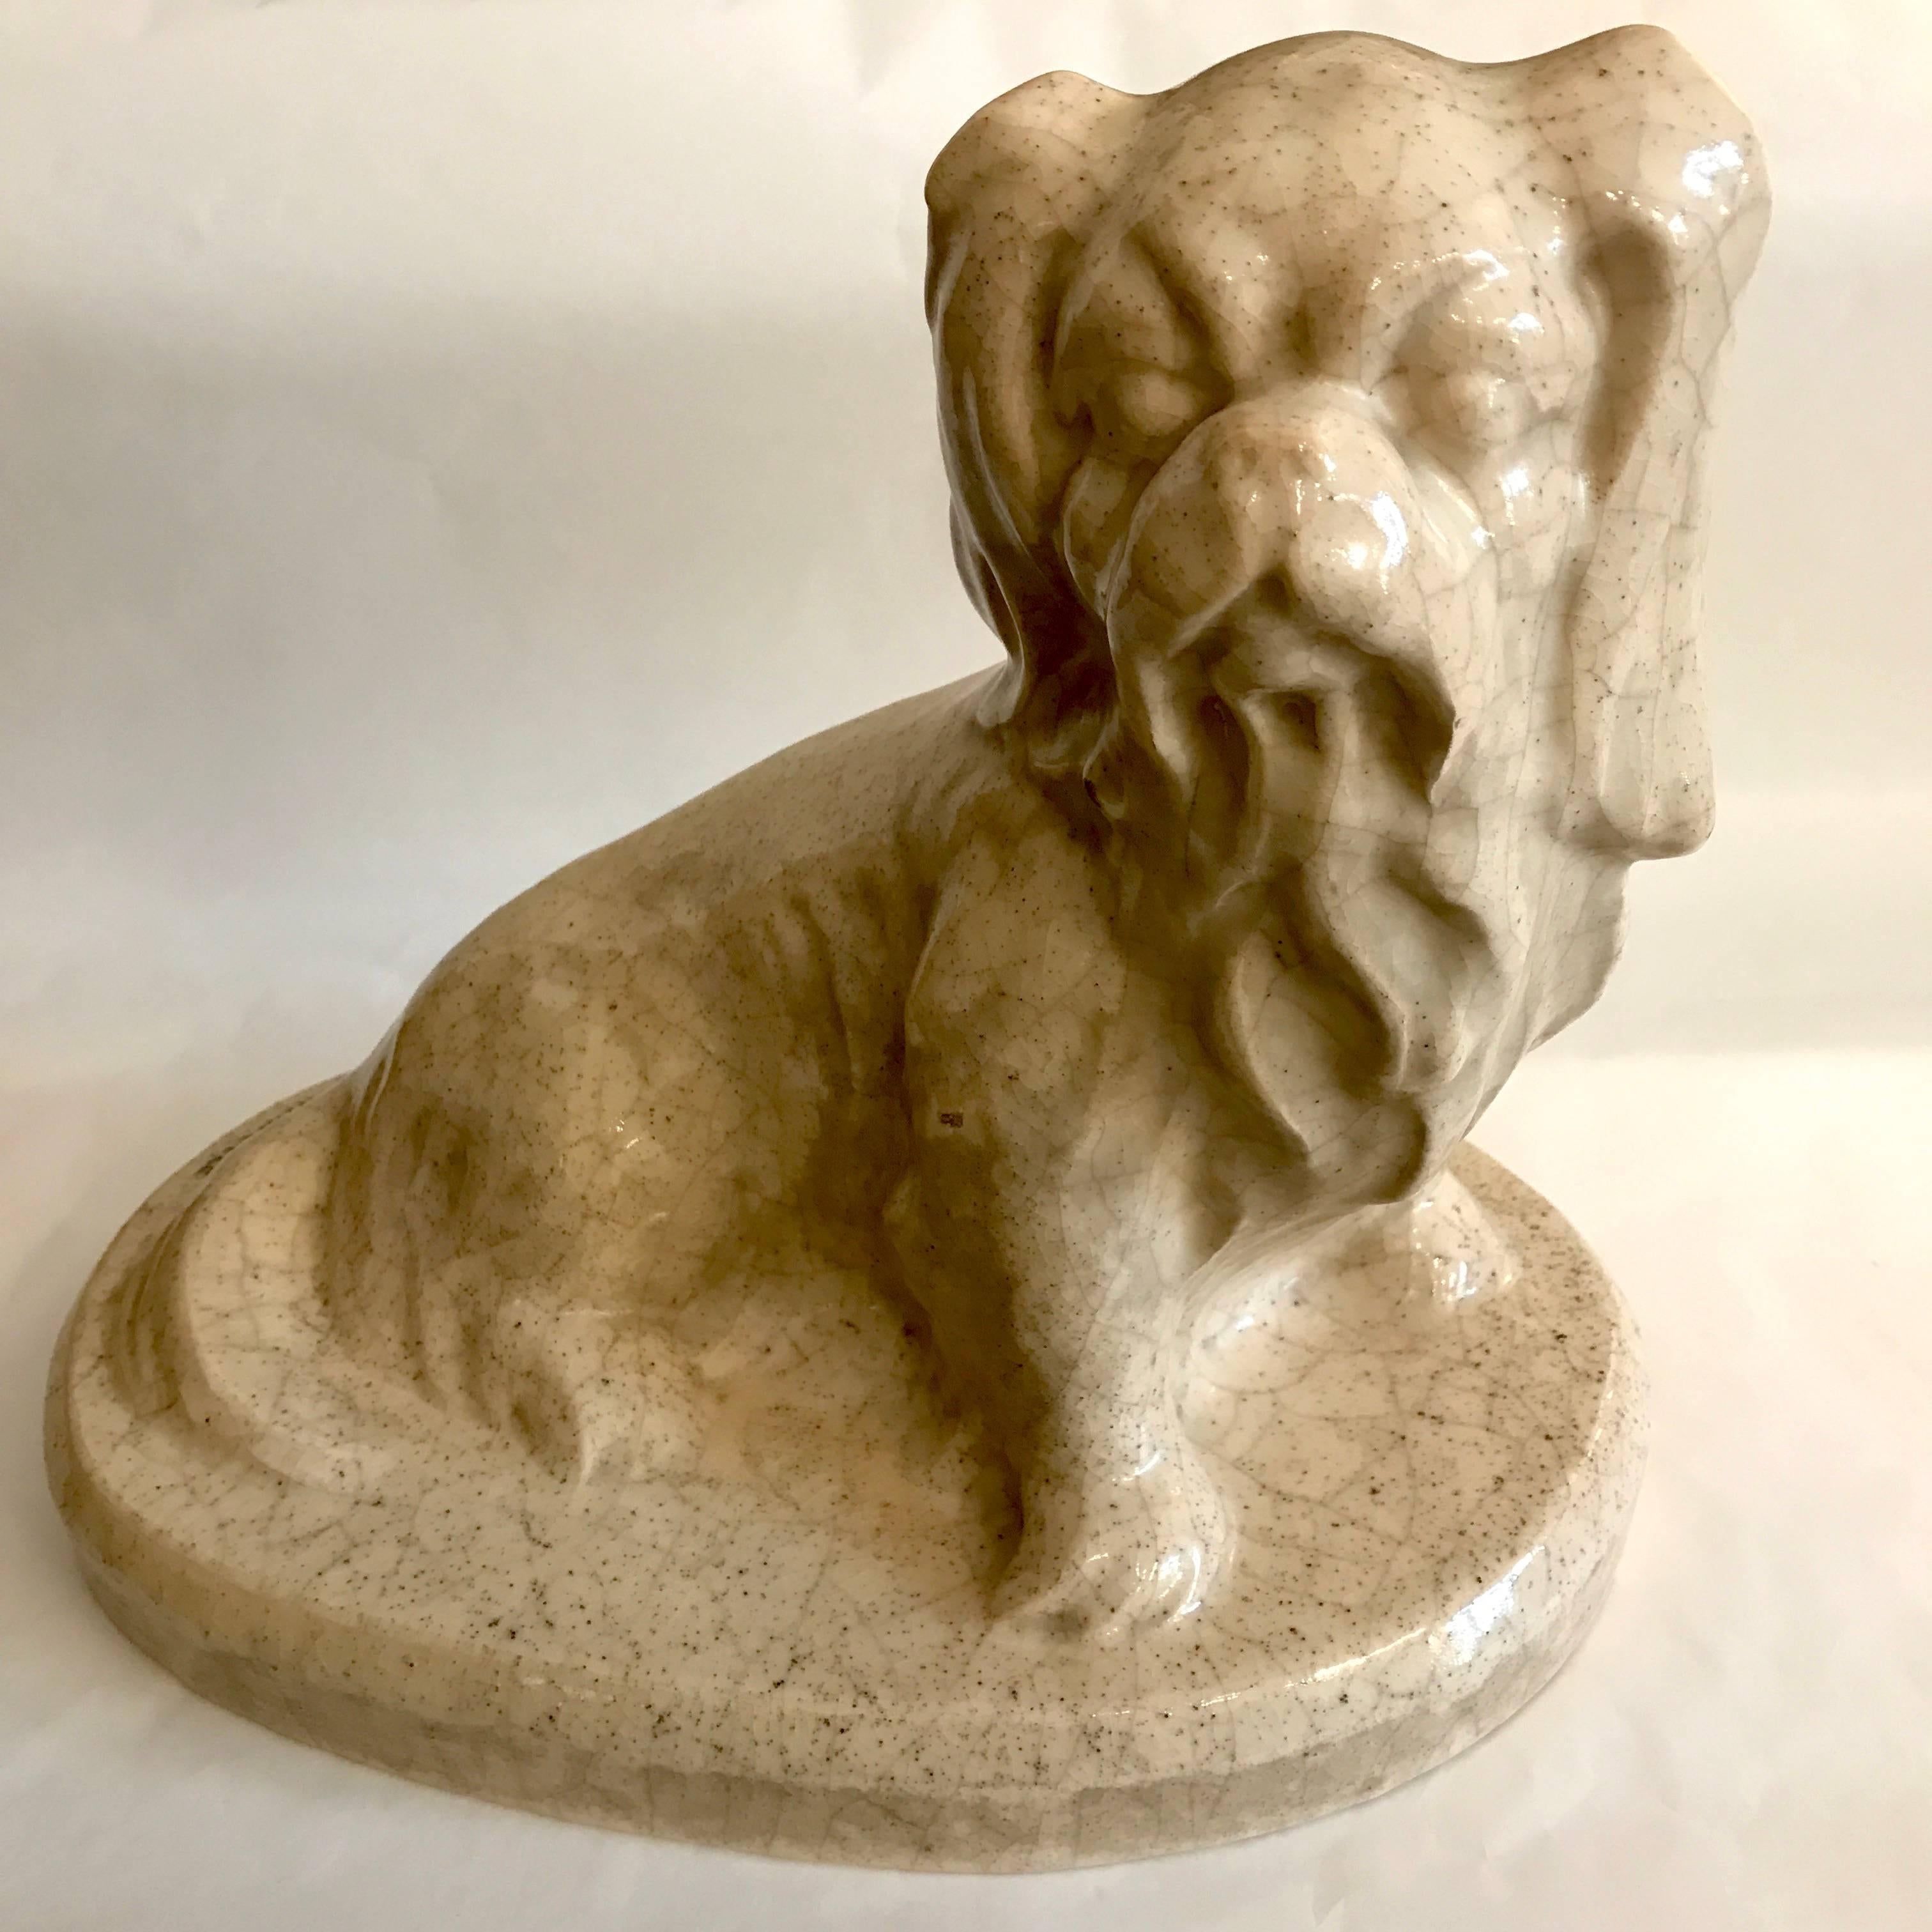 Louis Fontinelle, Keramik, Art Deco, Pekinesenhund, cremefarbenes Craquelé, auf ovalem Sockel sitzender Pekinesenhund, auf der Rückseite signiert L. FONTINELLE ; französischer Künstler (Paris 1886-1964).
Die Hundefigur stammt aus der Zeit um 1925